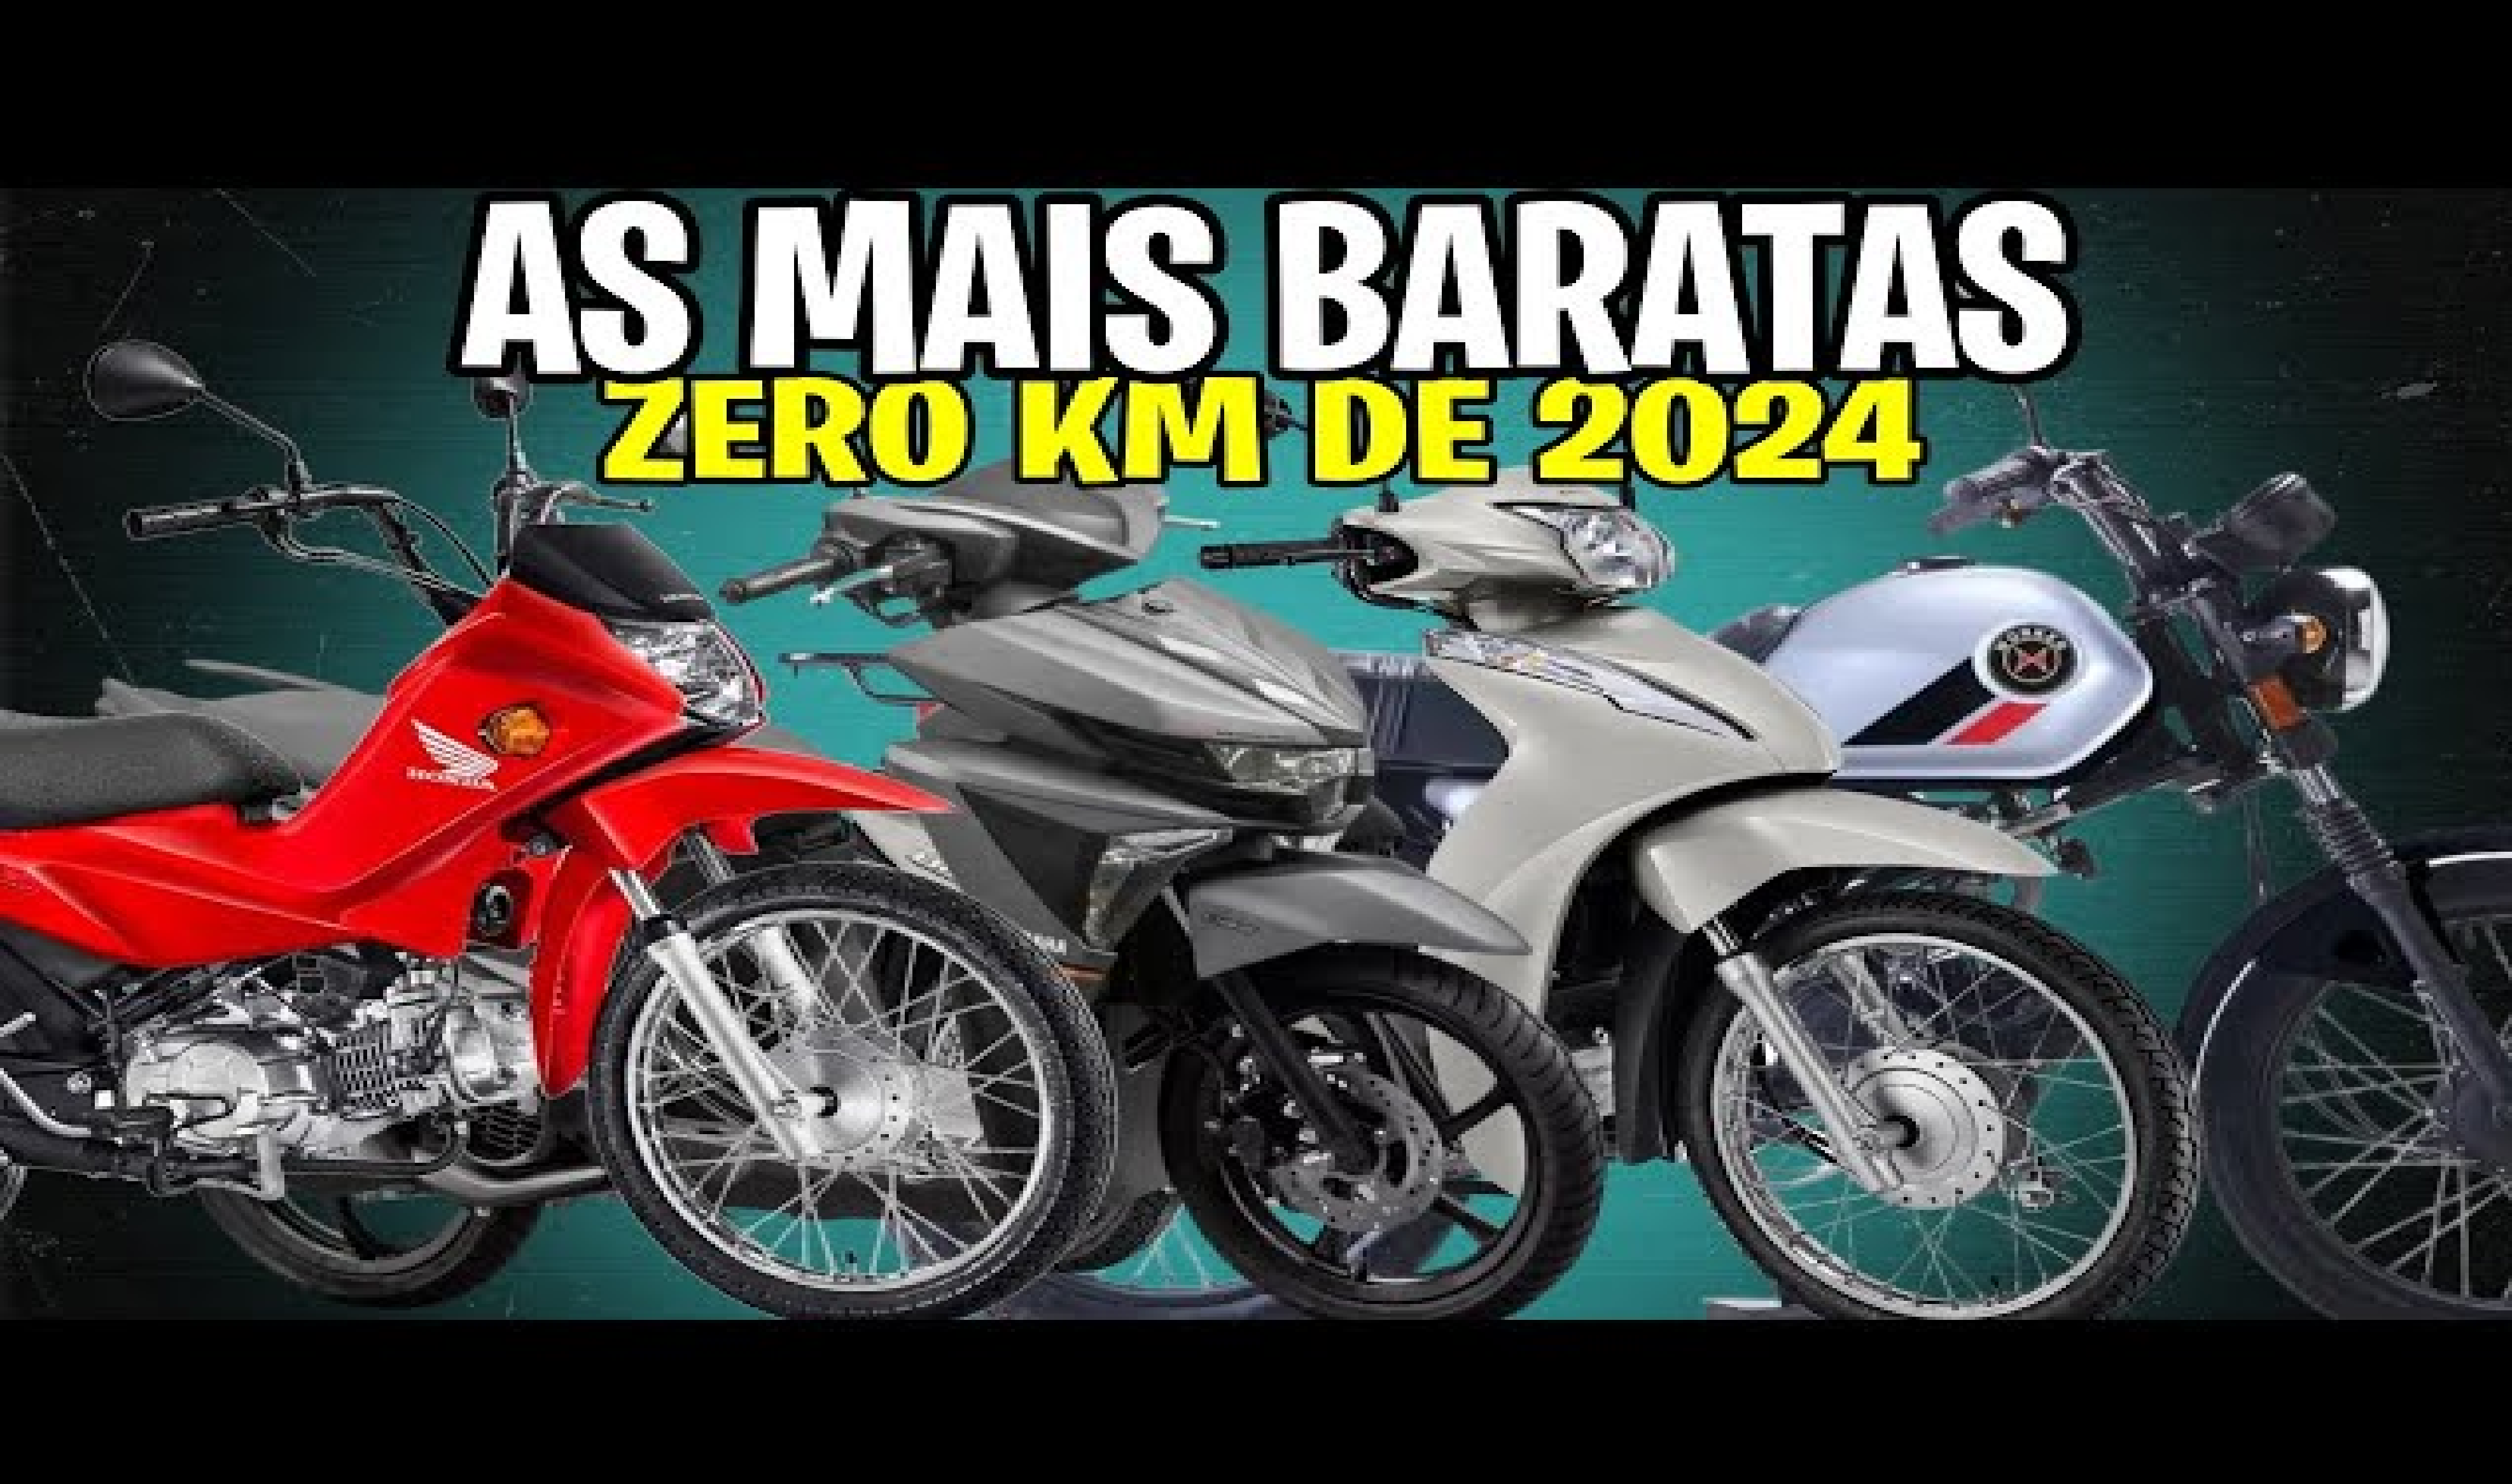 Honda, Yamaha e Shineray: motos ‘baratinhas’ que custam menos de R$ 15 mil. Conheça agora as 10 motos mais baratas do Brasil em 2024